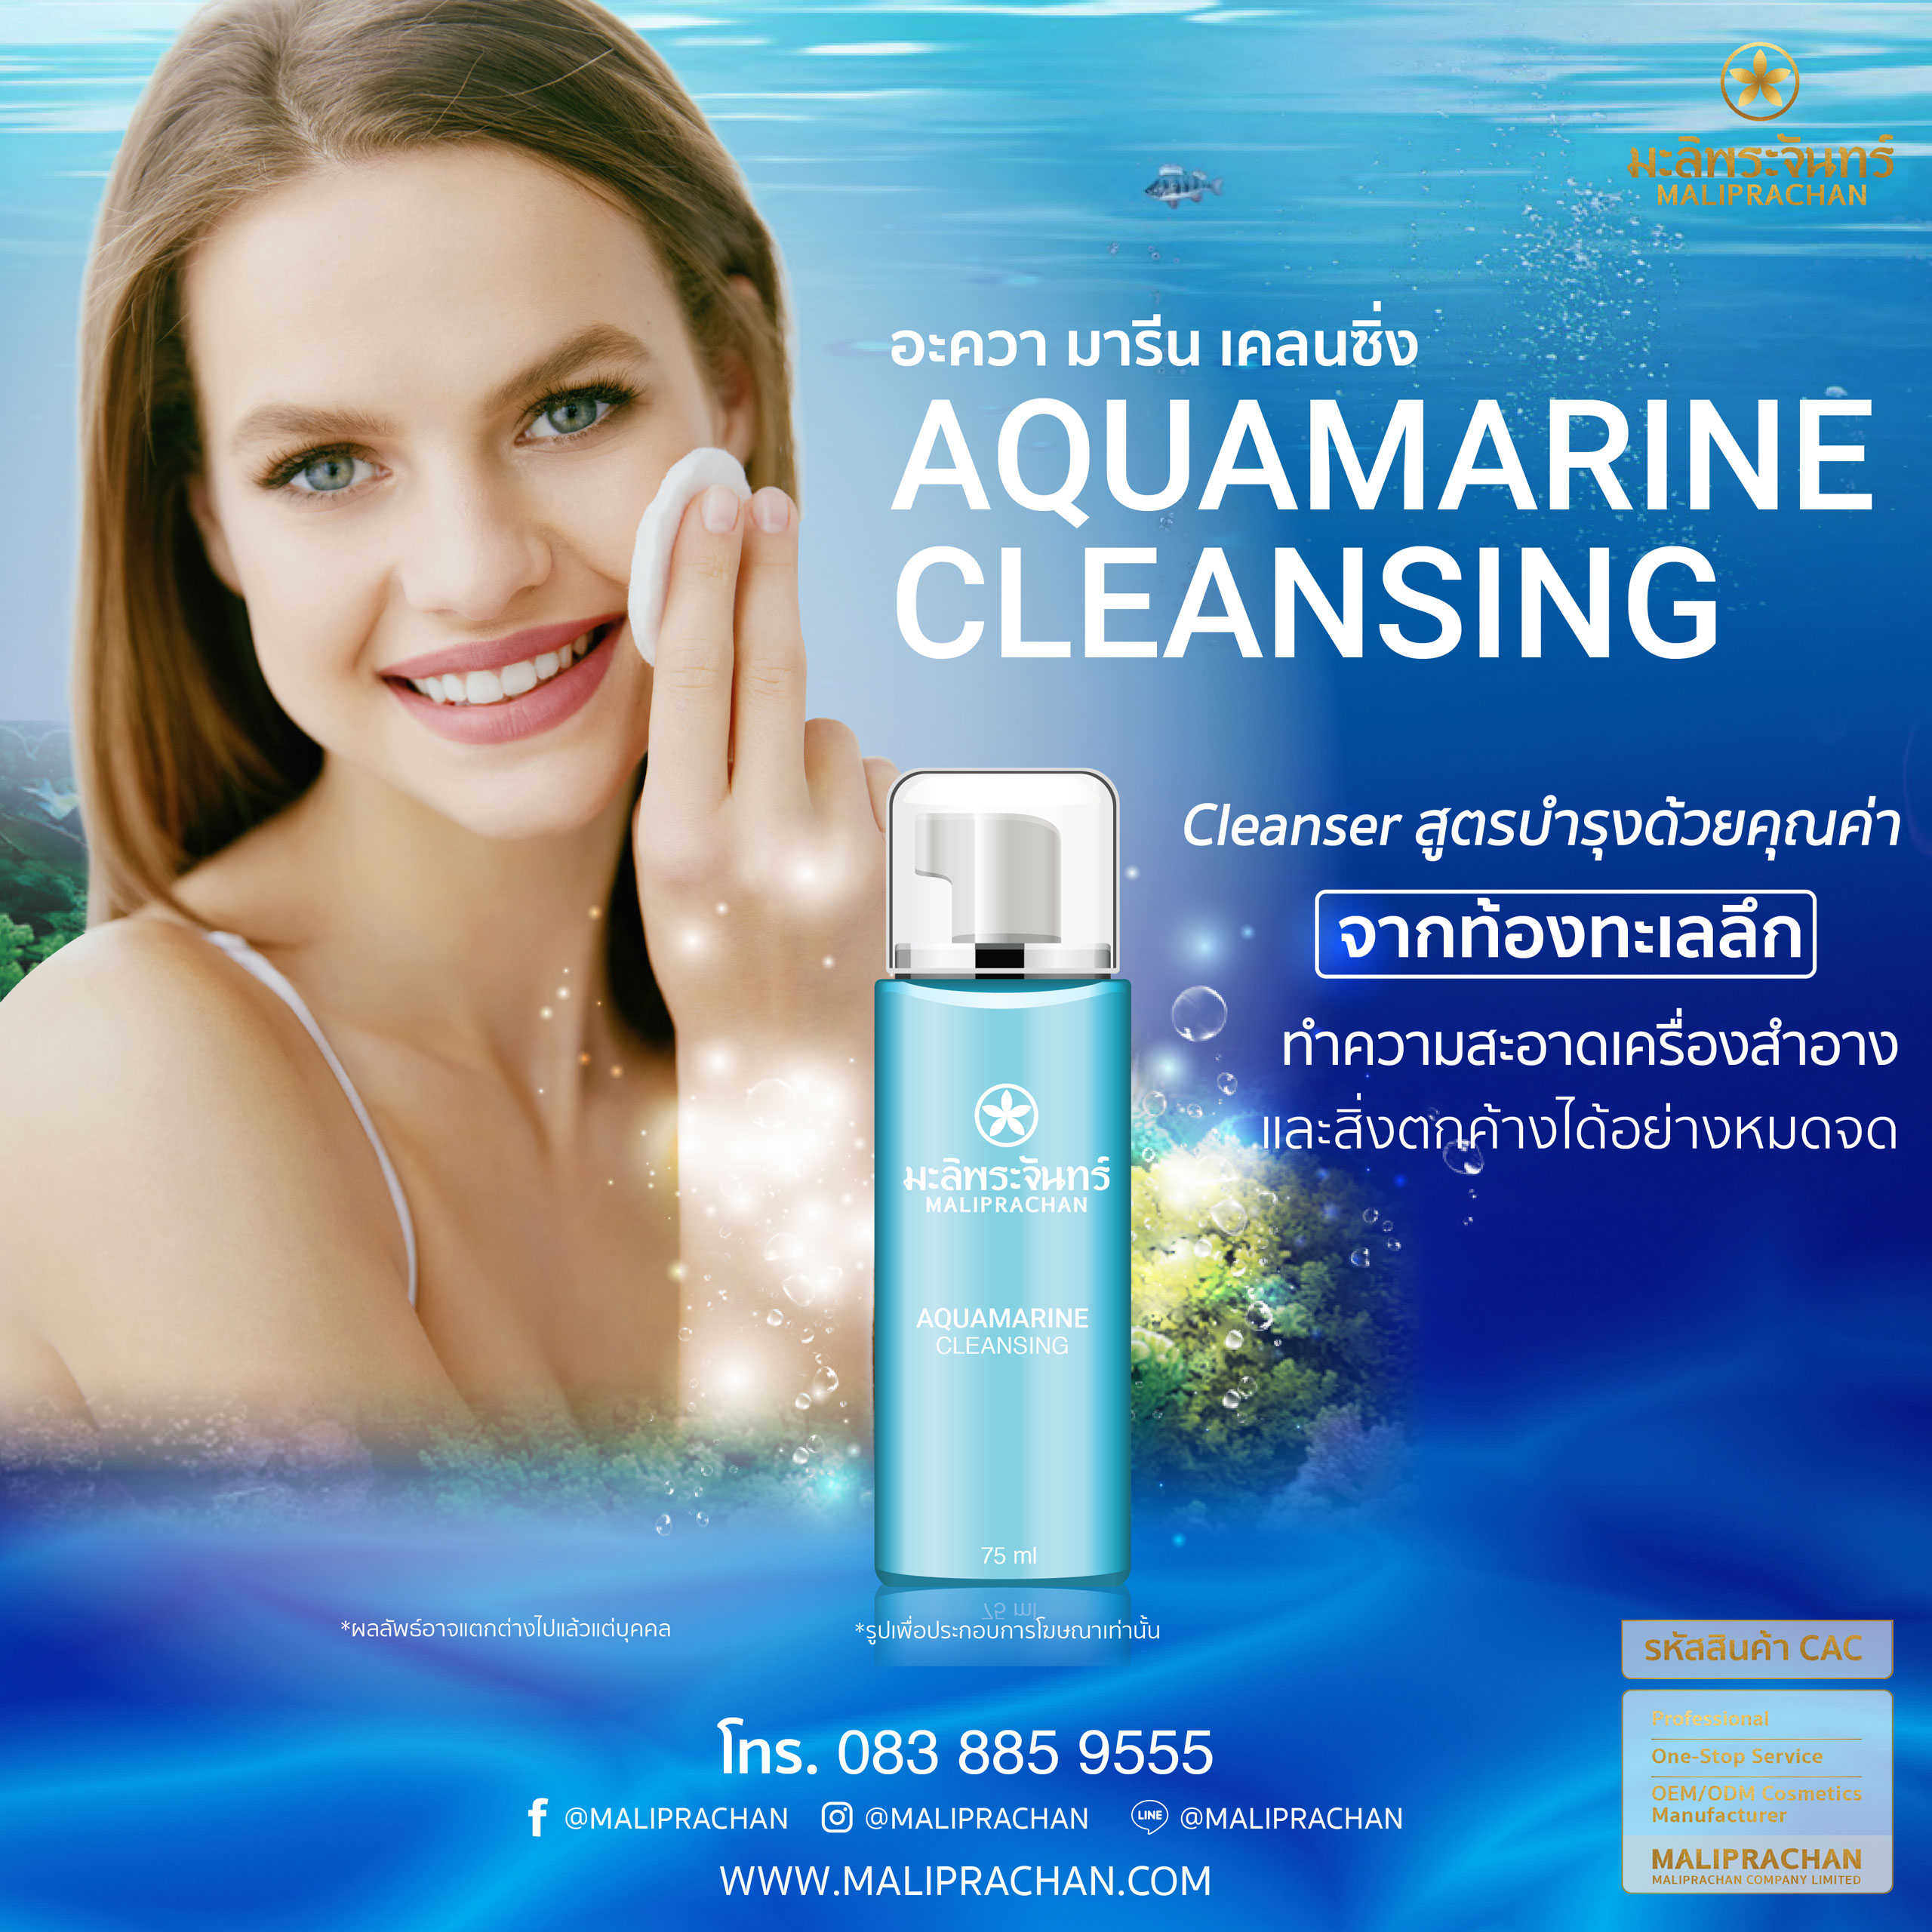 Aquamarine Cleansing